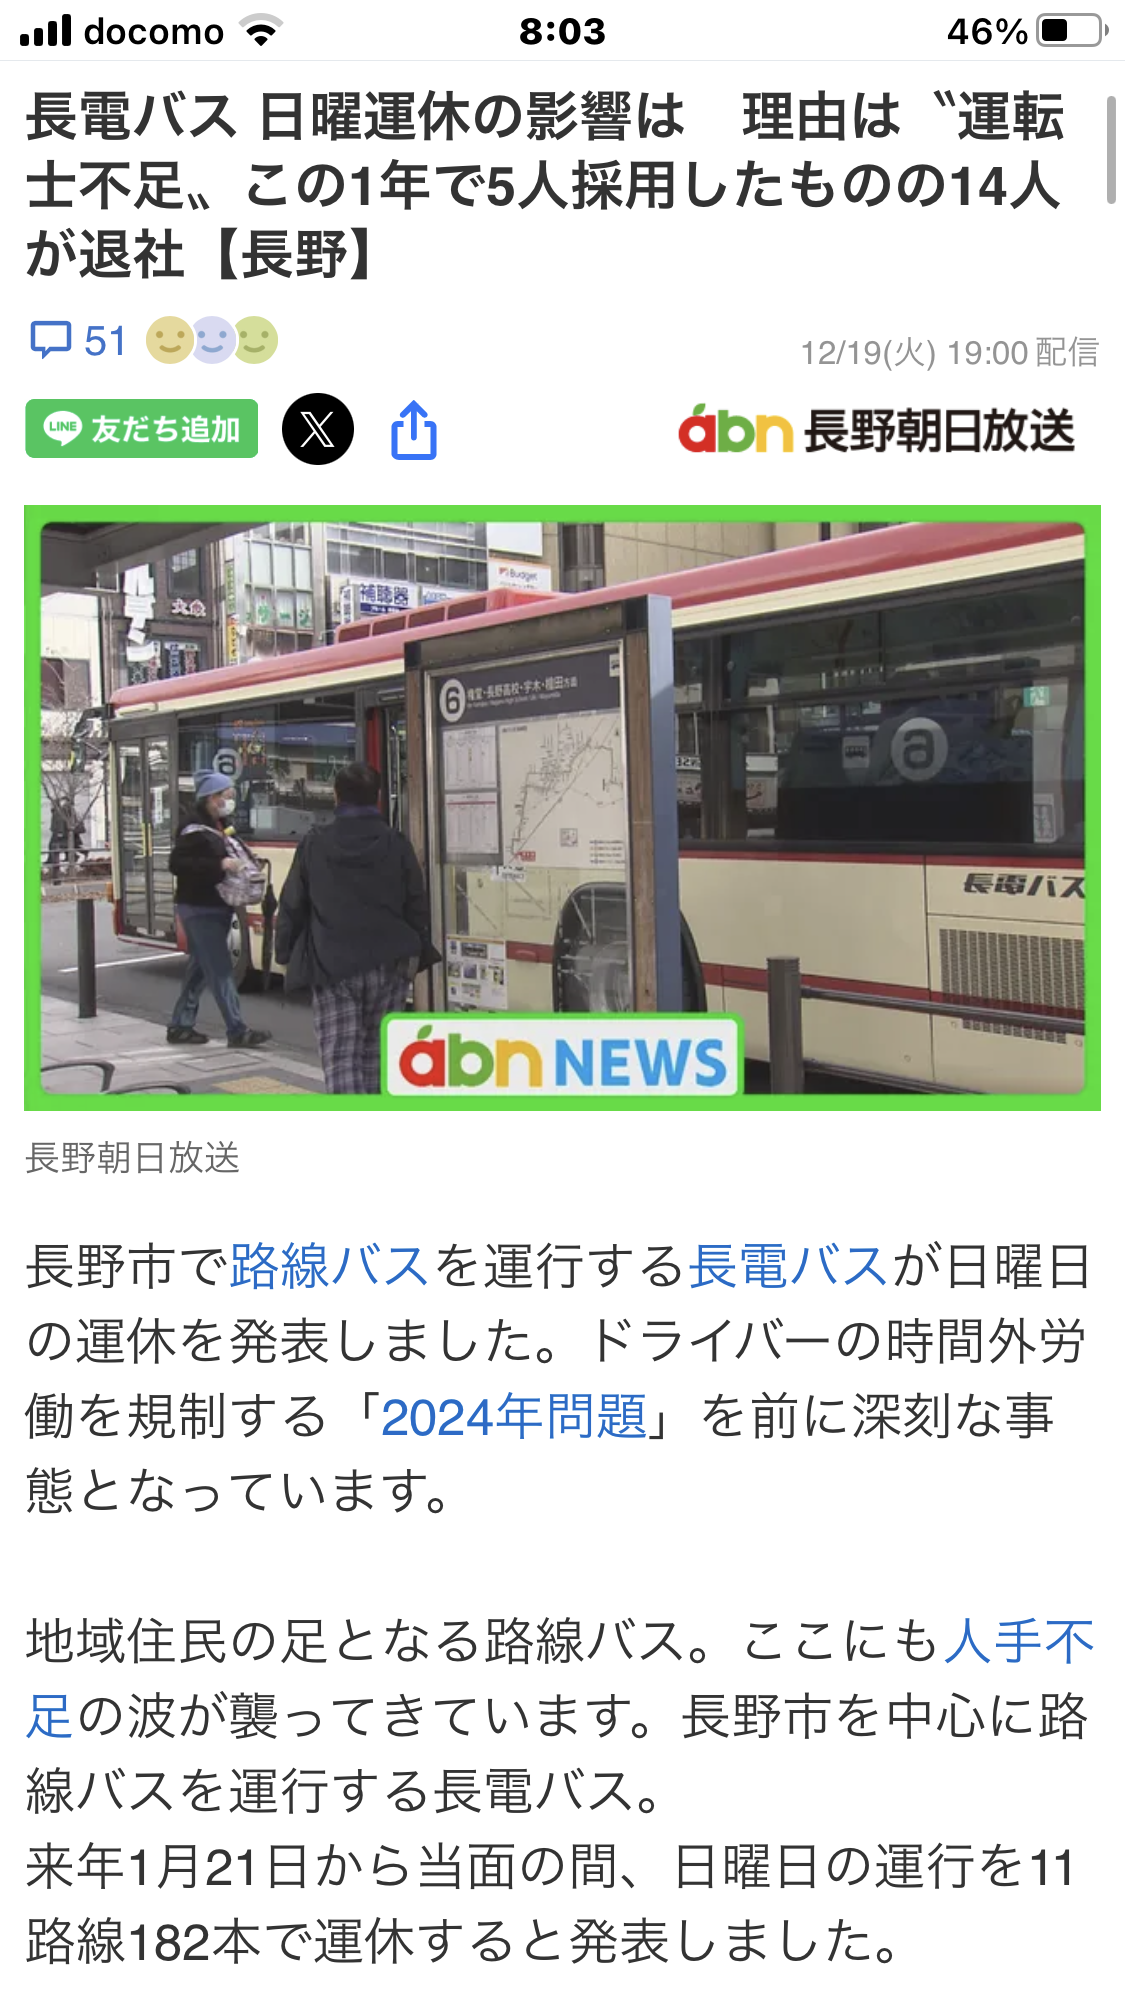 昨日の休日バス運休のニュースソースです。深刻です。明日は上田もですね。